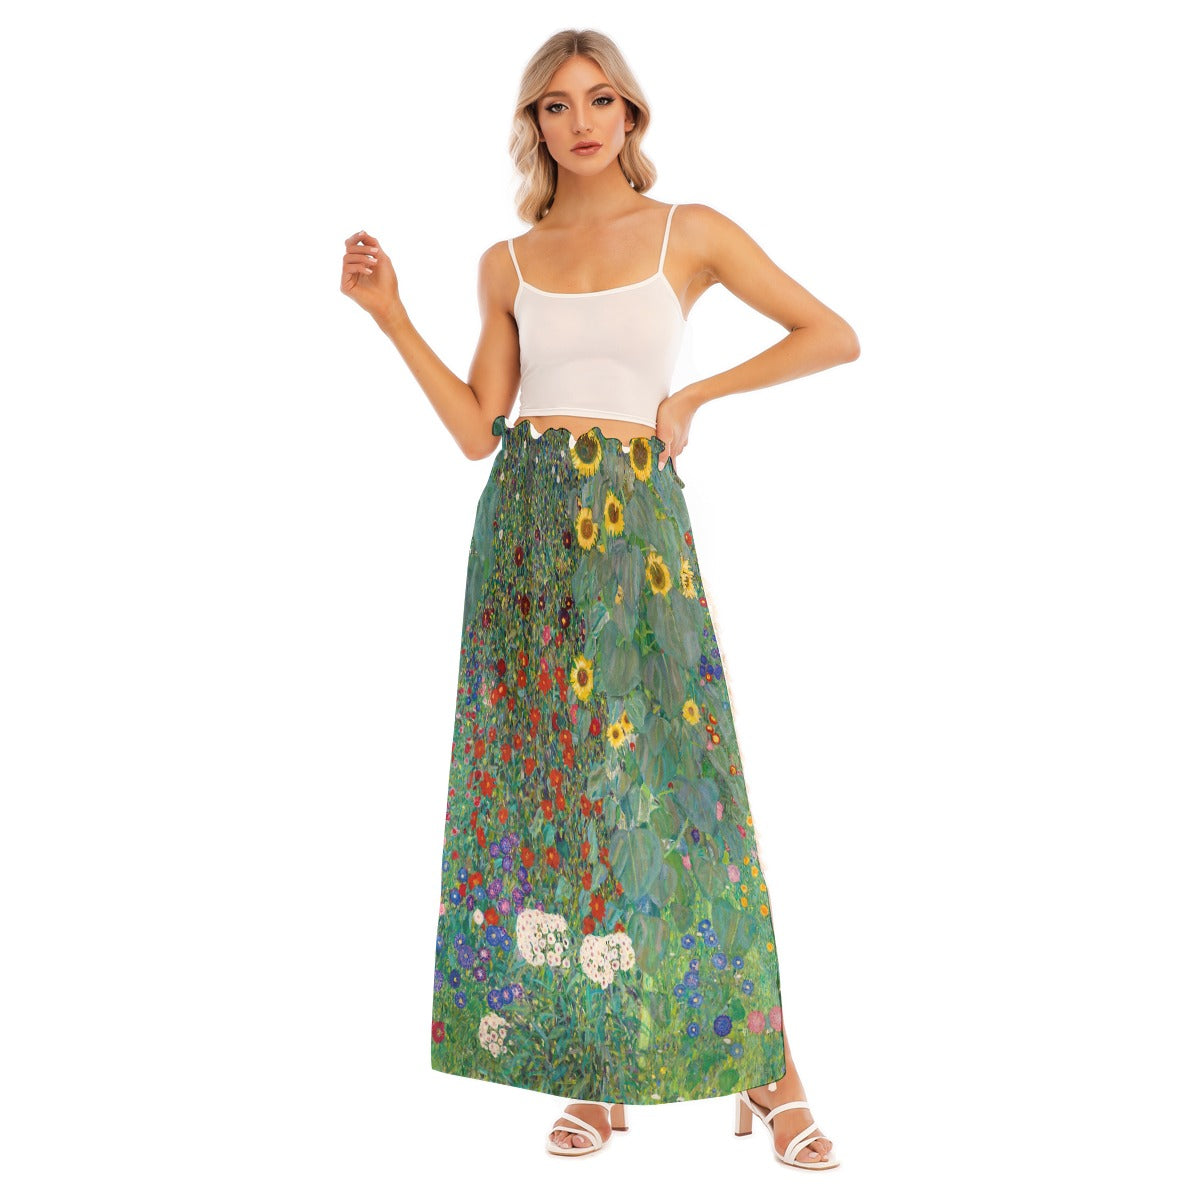 Sunflower Dreams Split Skirt in vibrant colors